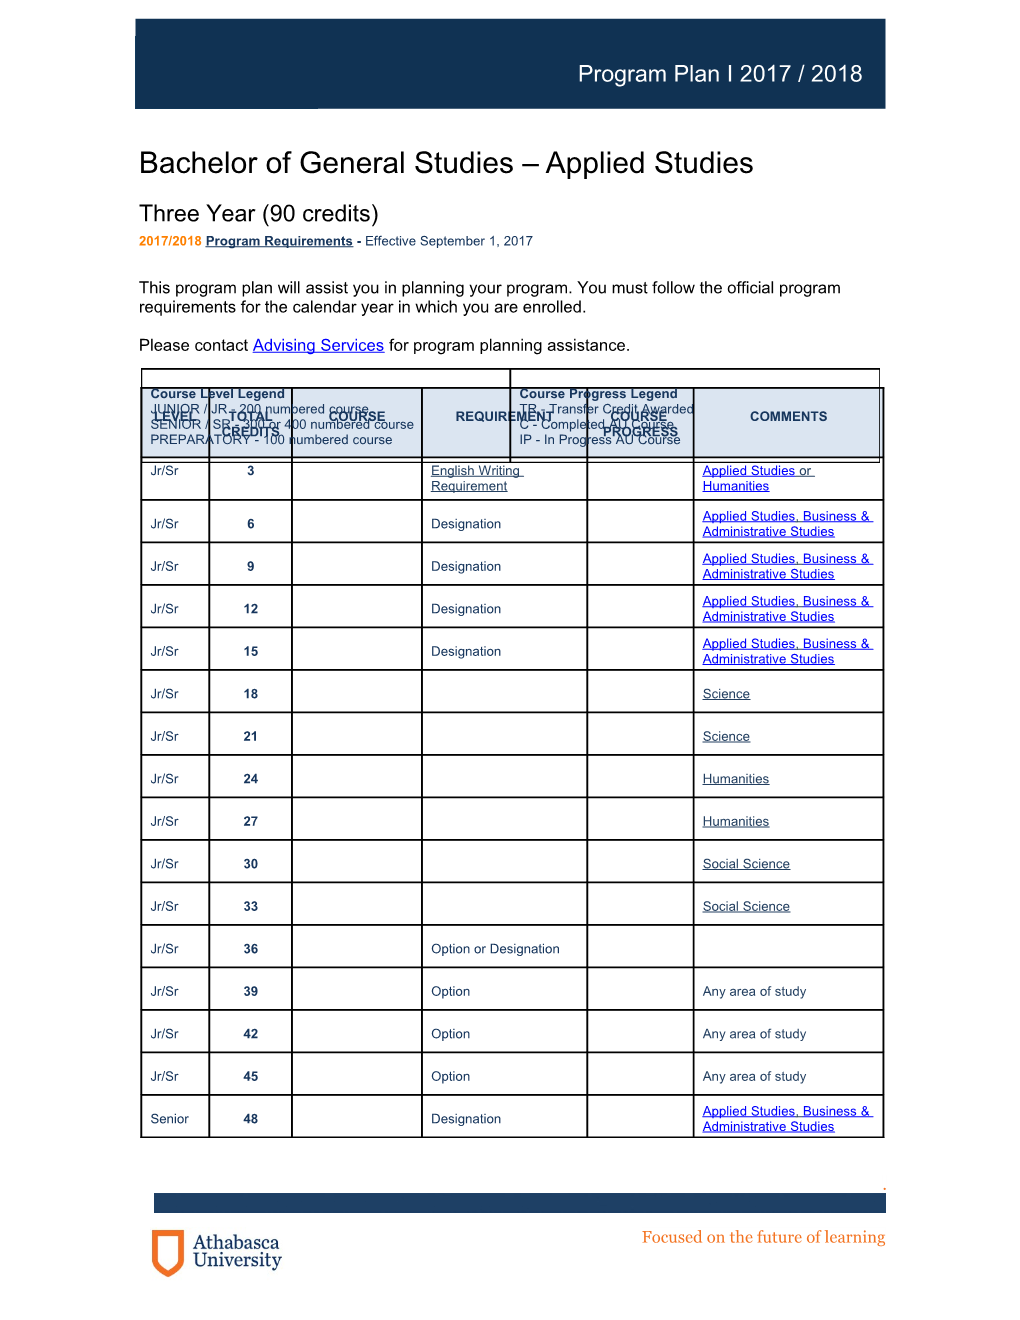 Bachelor of General Studies Applied Studies